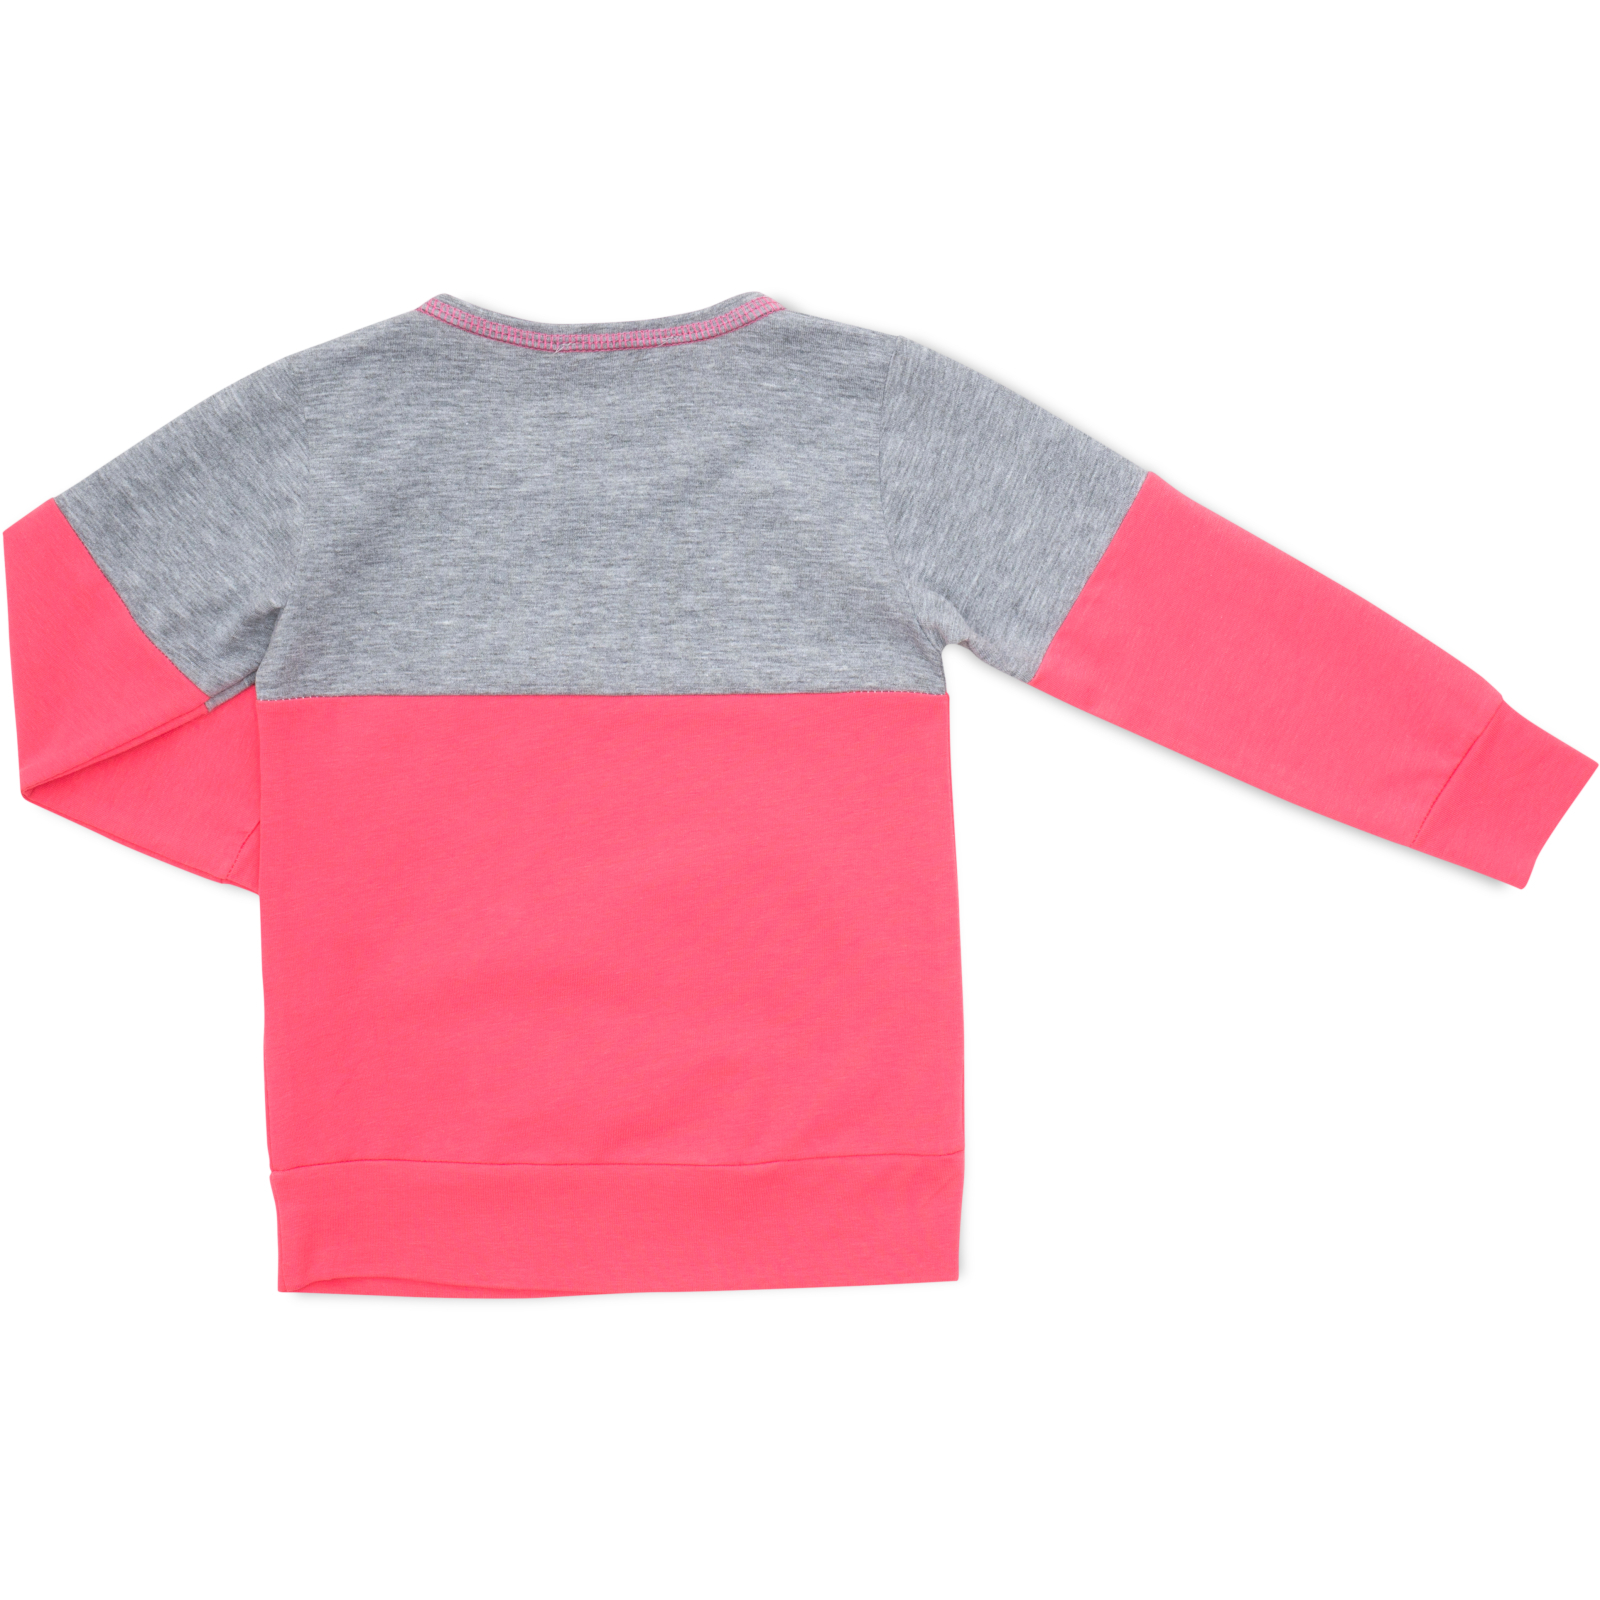 Пижама Matilda со звездочками (7167-122G-pink) изображение 5